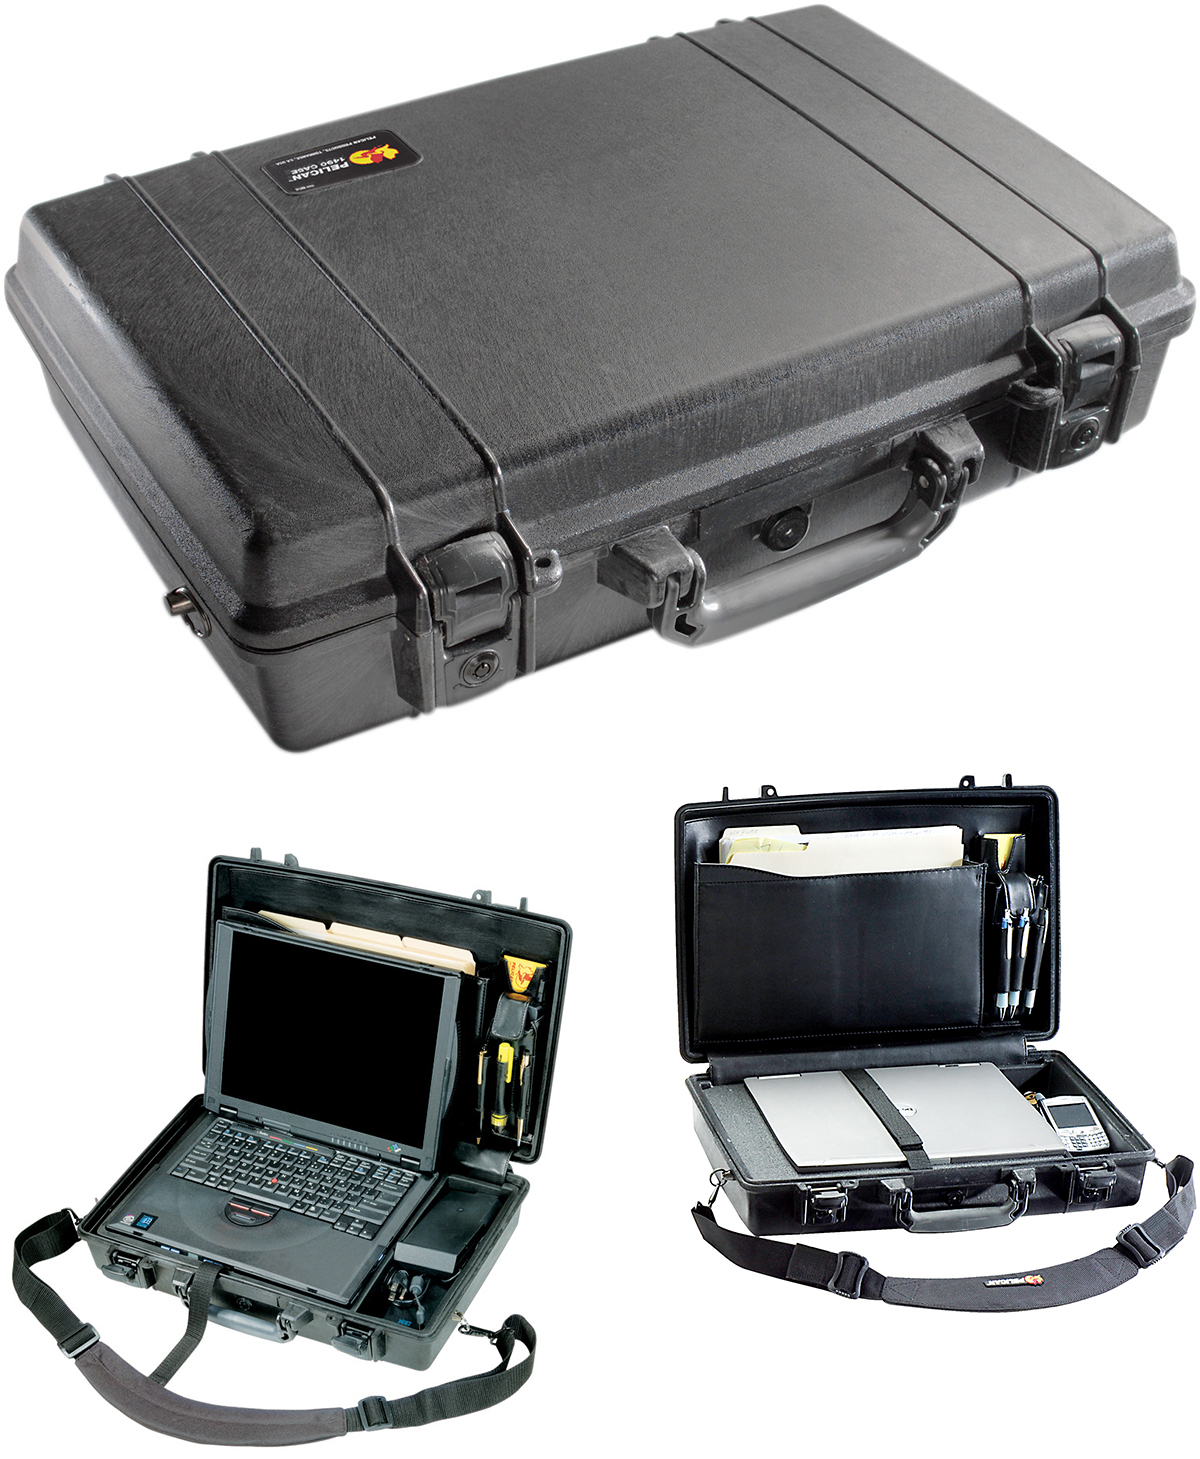 Gambar 1490Cc1 Protector Laptop Case